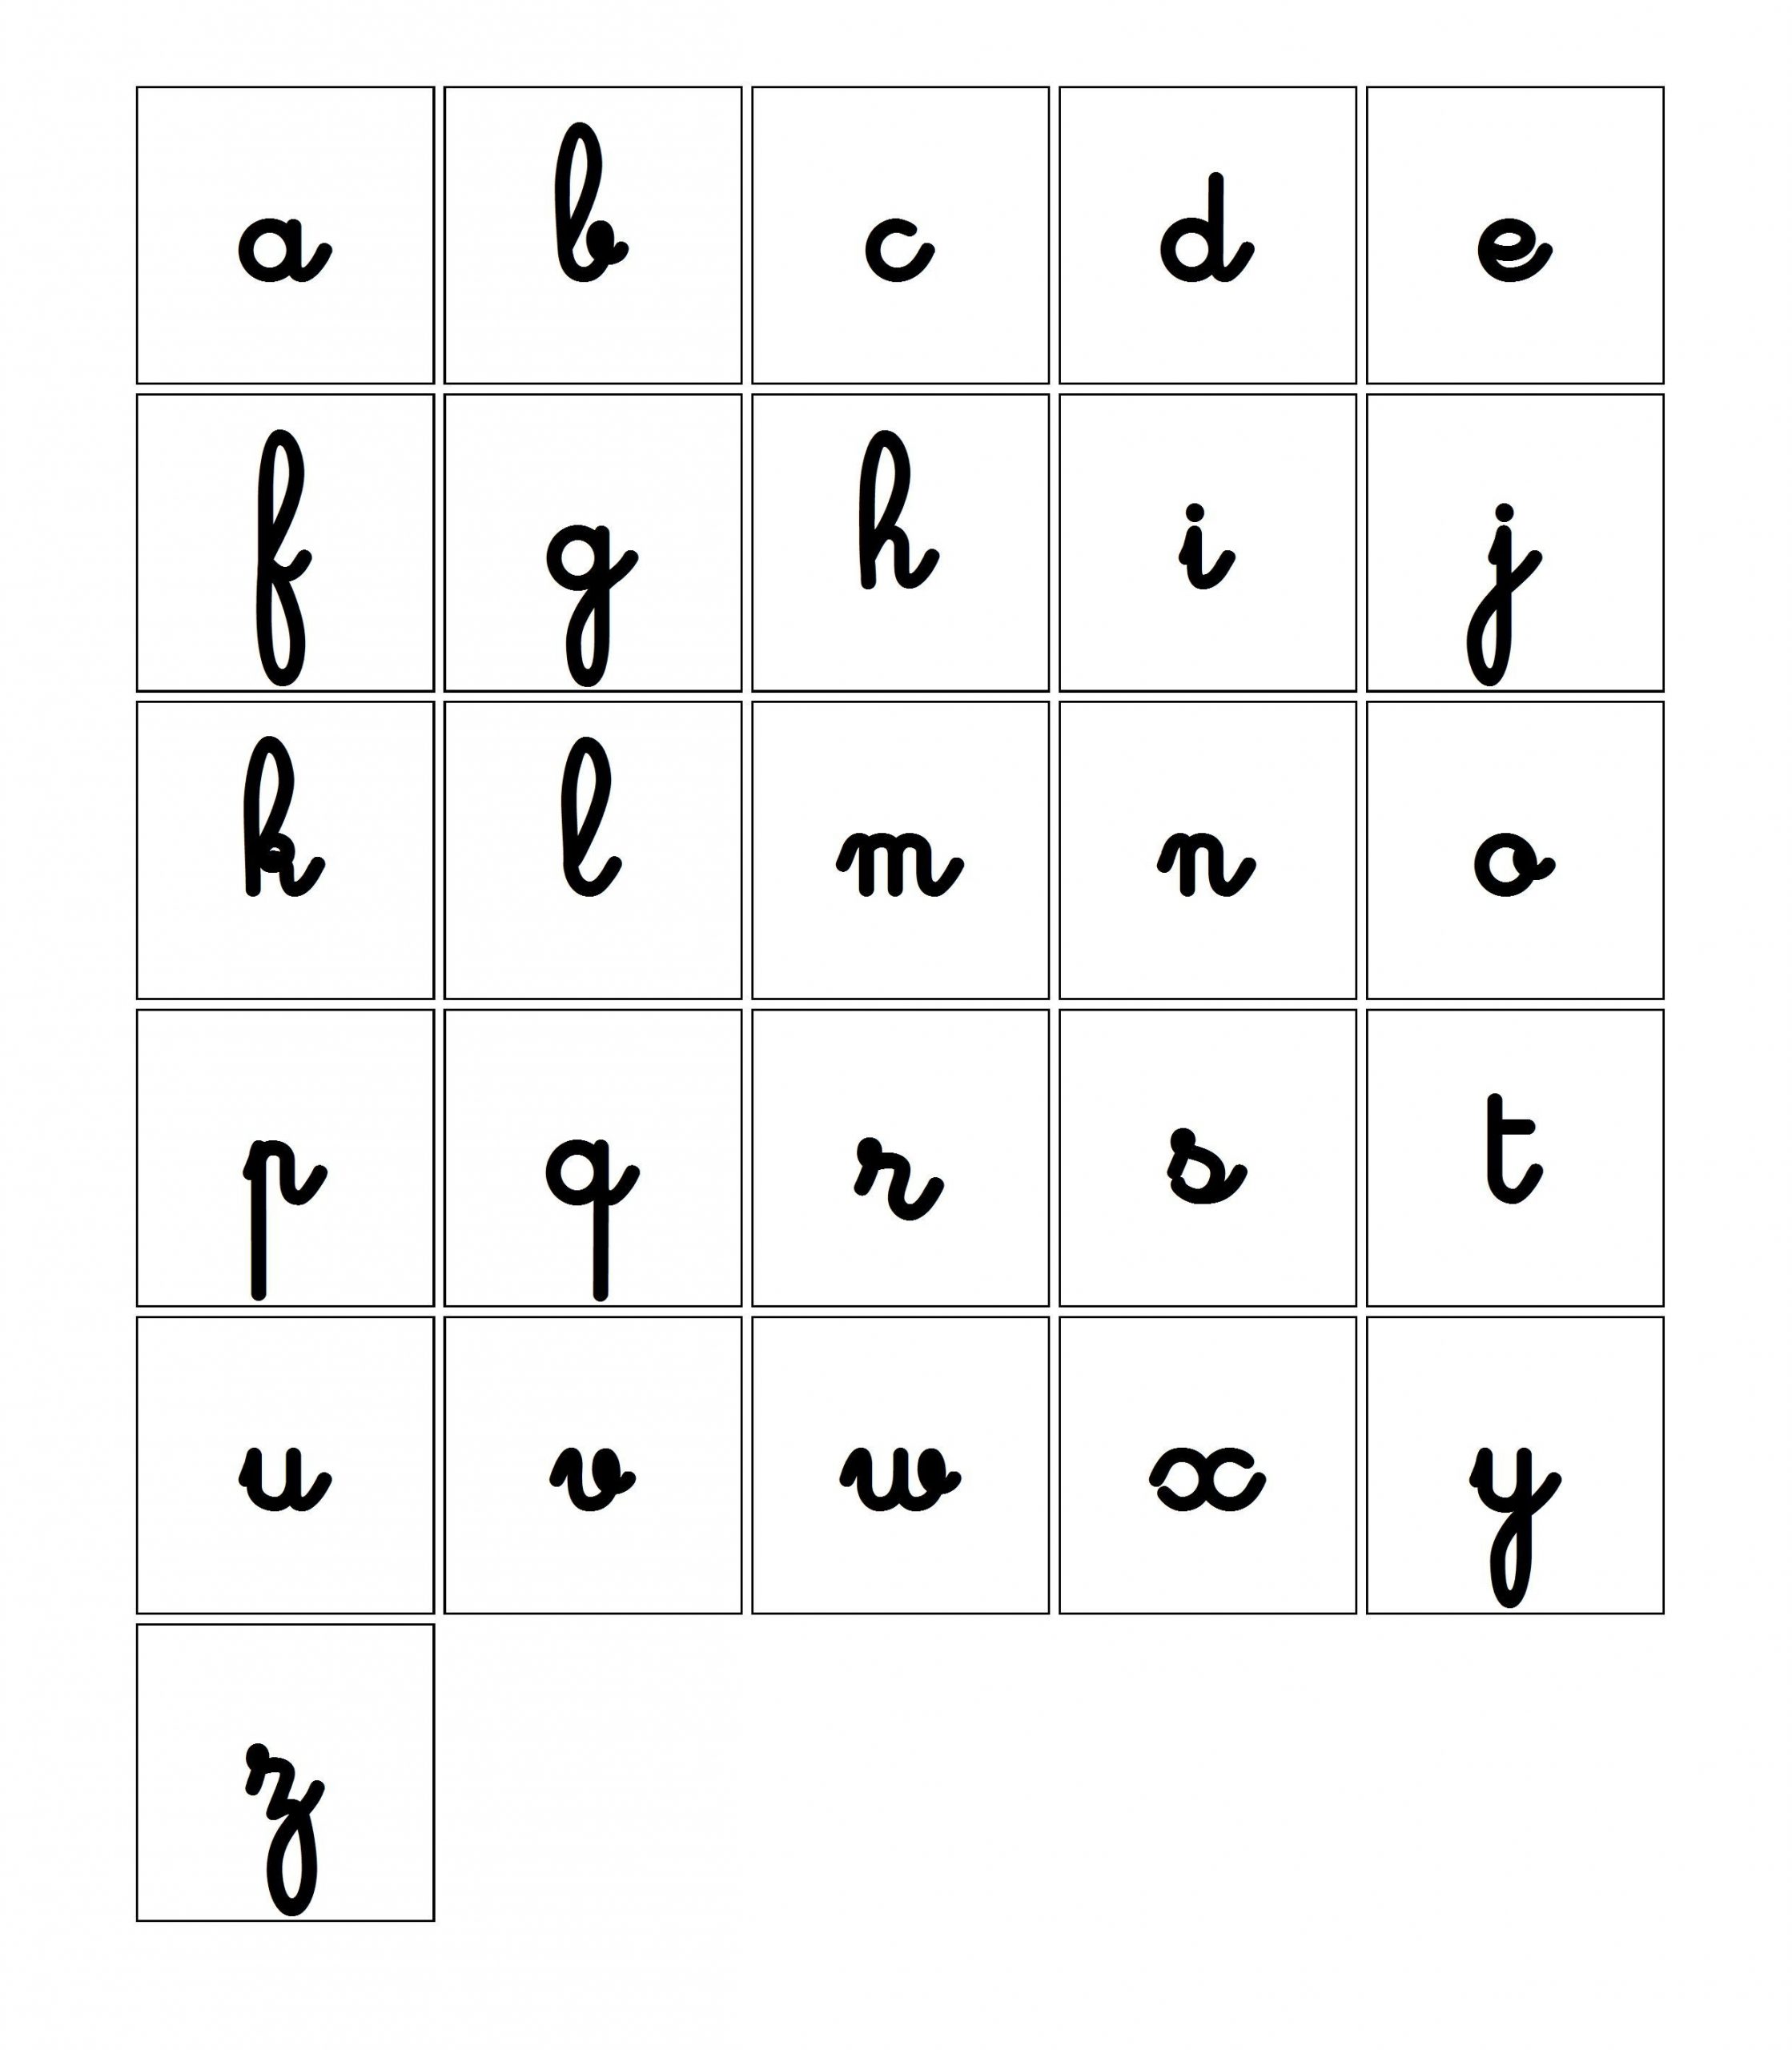 Jeu De Loto De L'alphabet - Les Cartes Lettres Cursives avec Lettres Majuscules À Imprimer